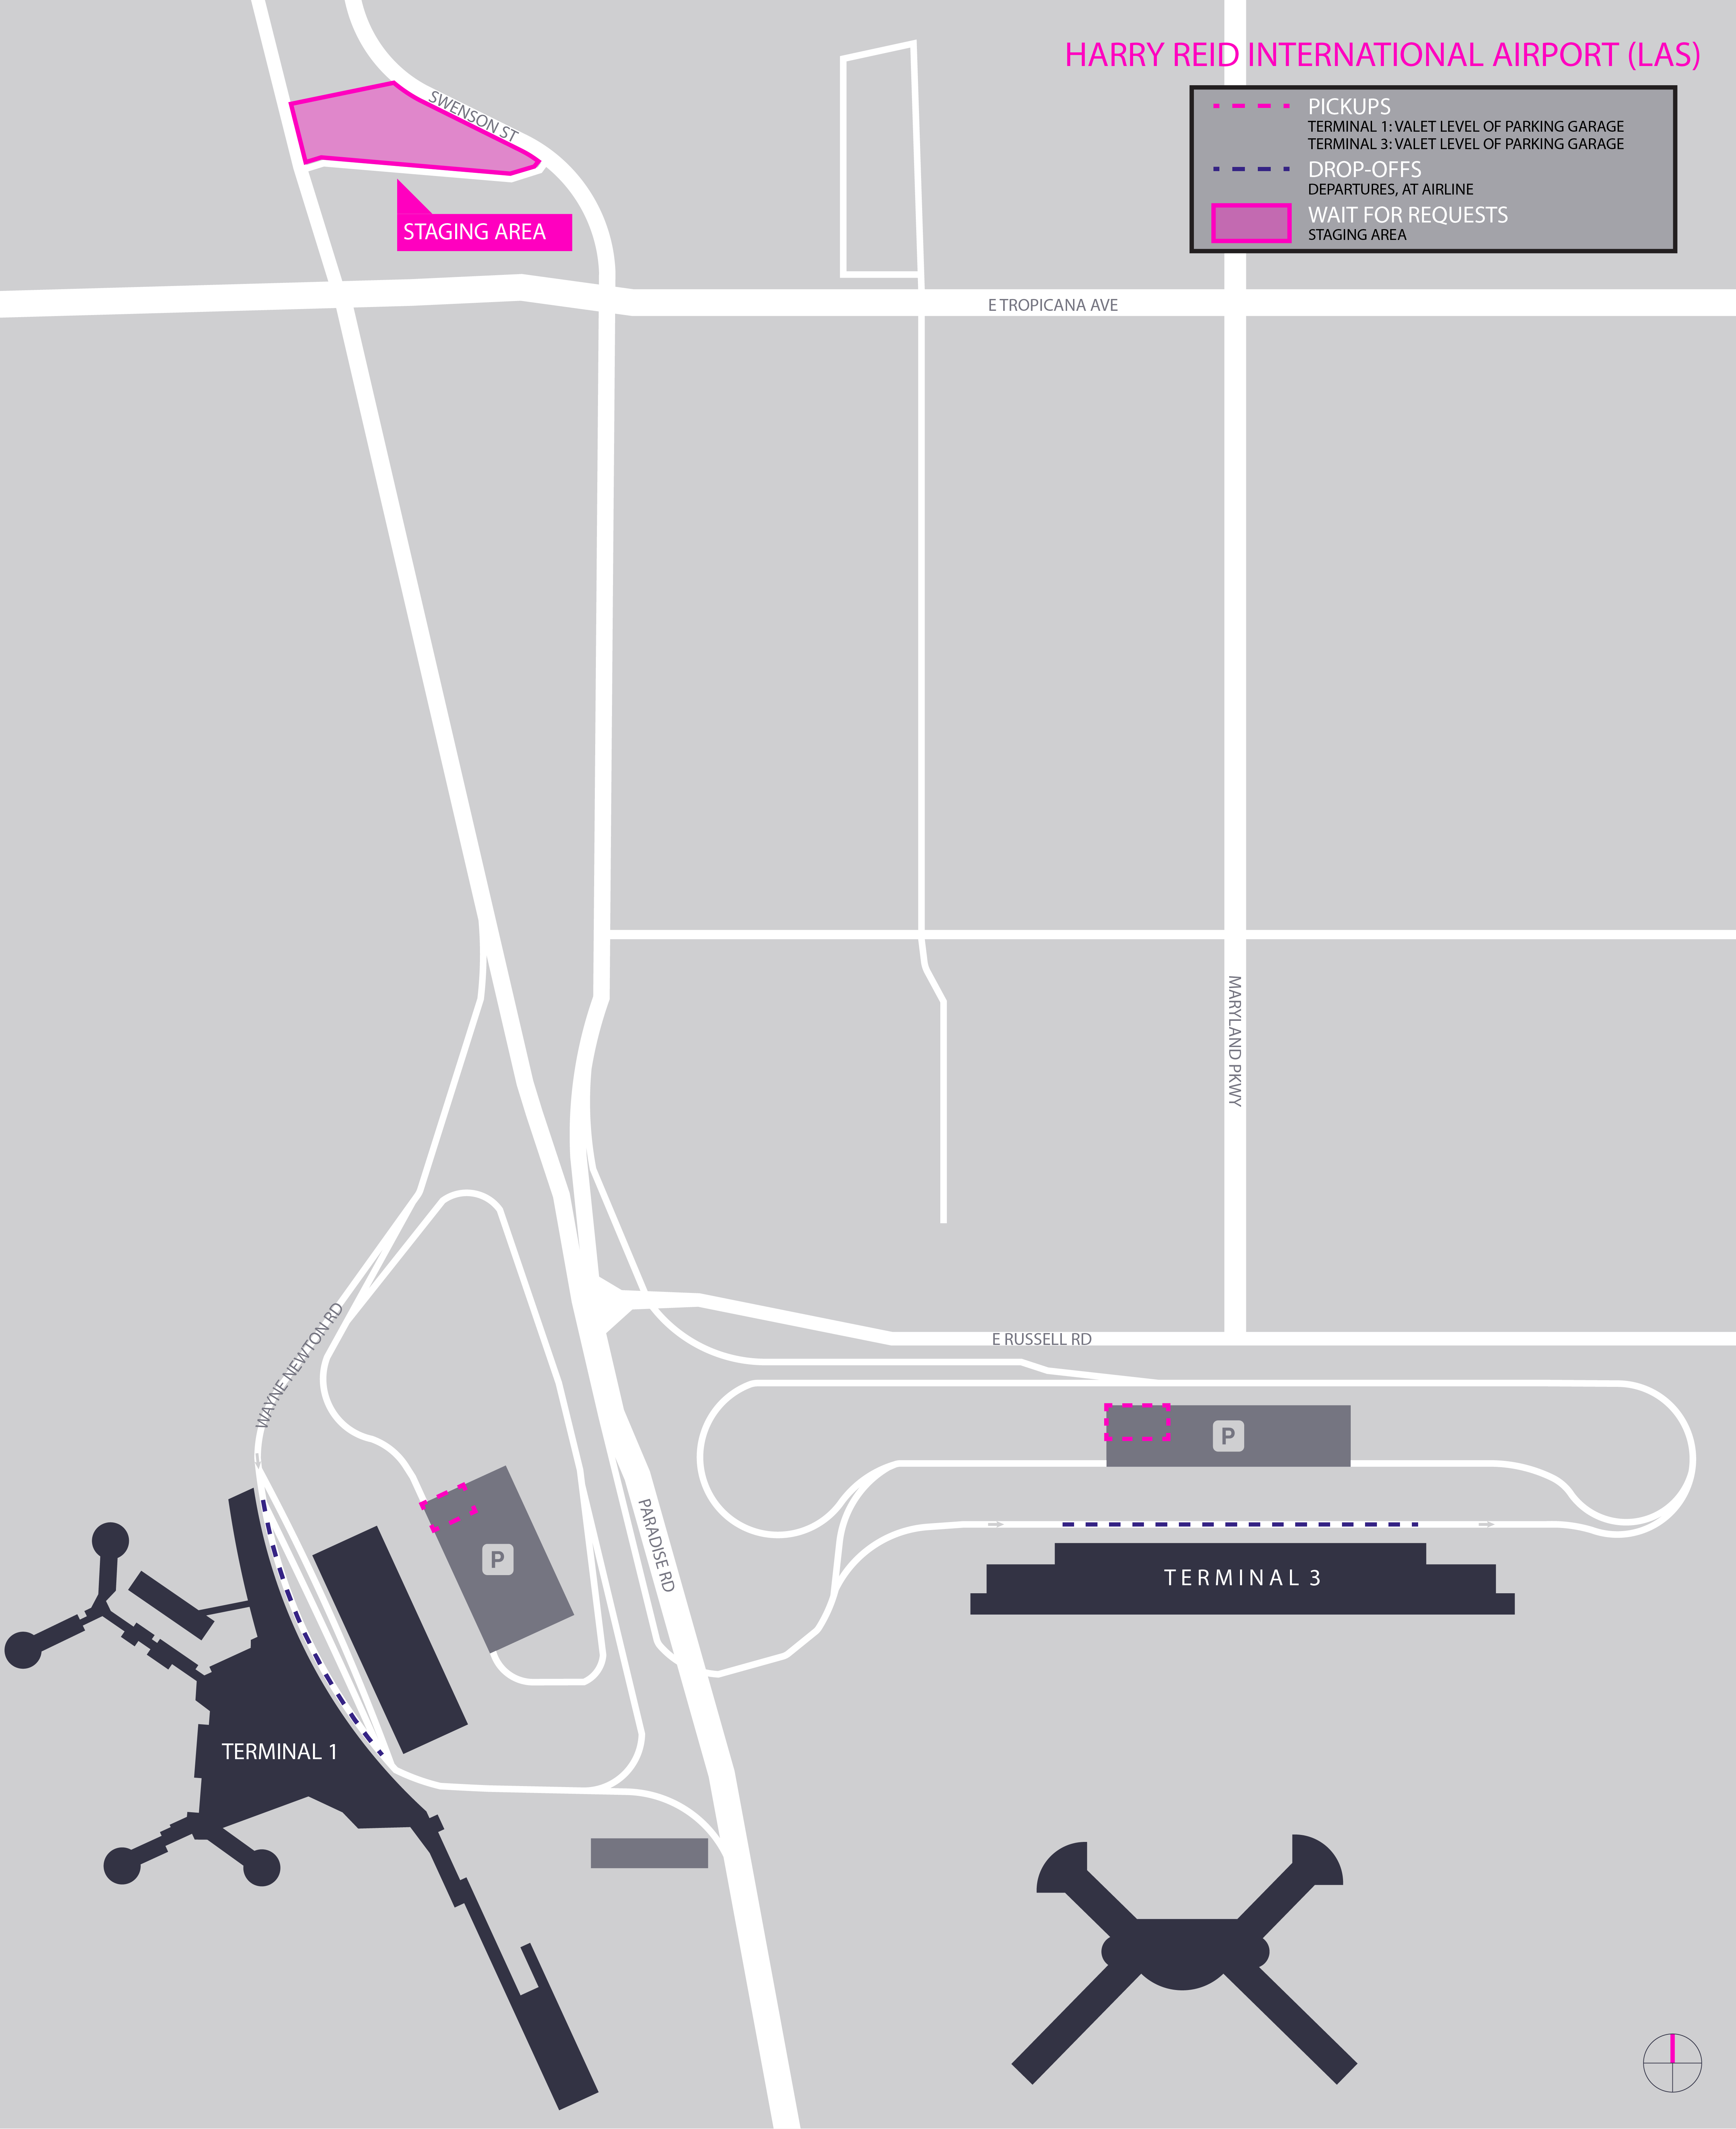 Esta imagem é um mapa do aeroporto LAS. Ela inclui o local de espera, ponto de encontro e áreas de desembarque.